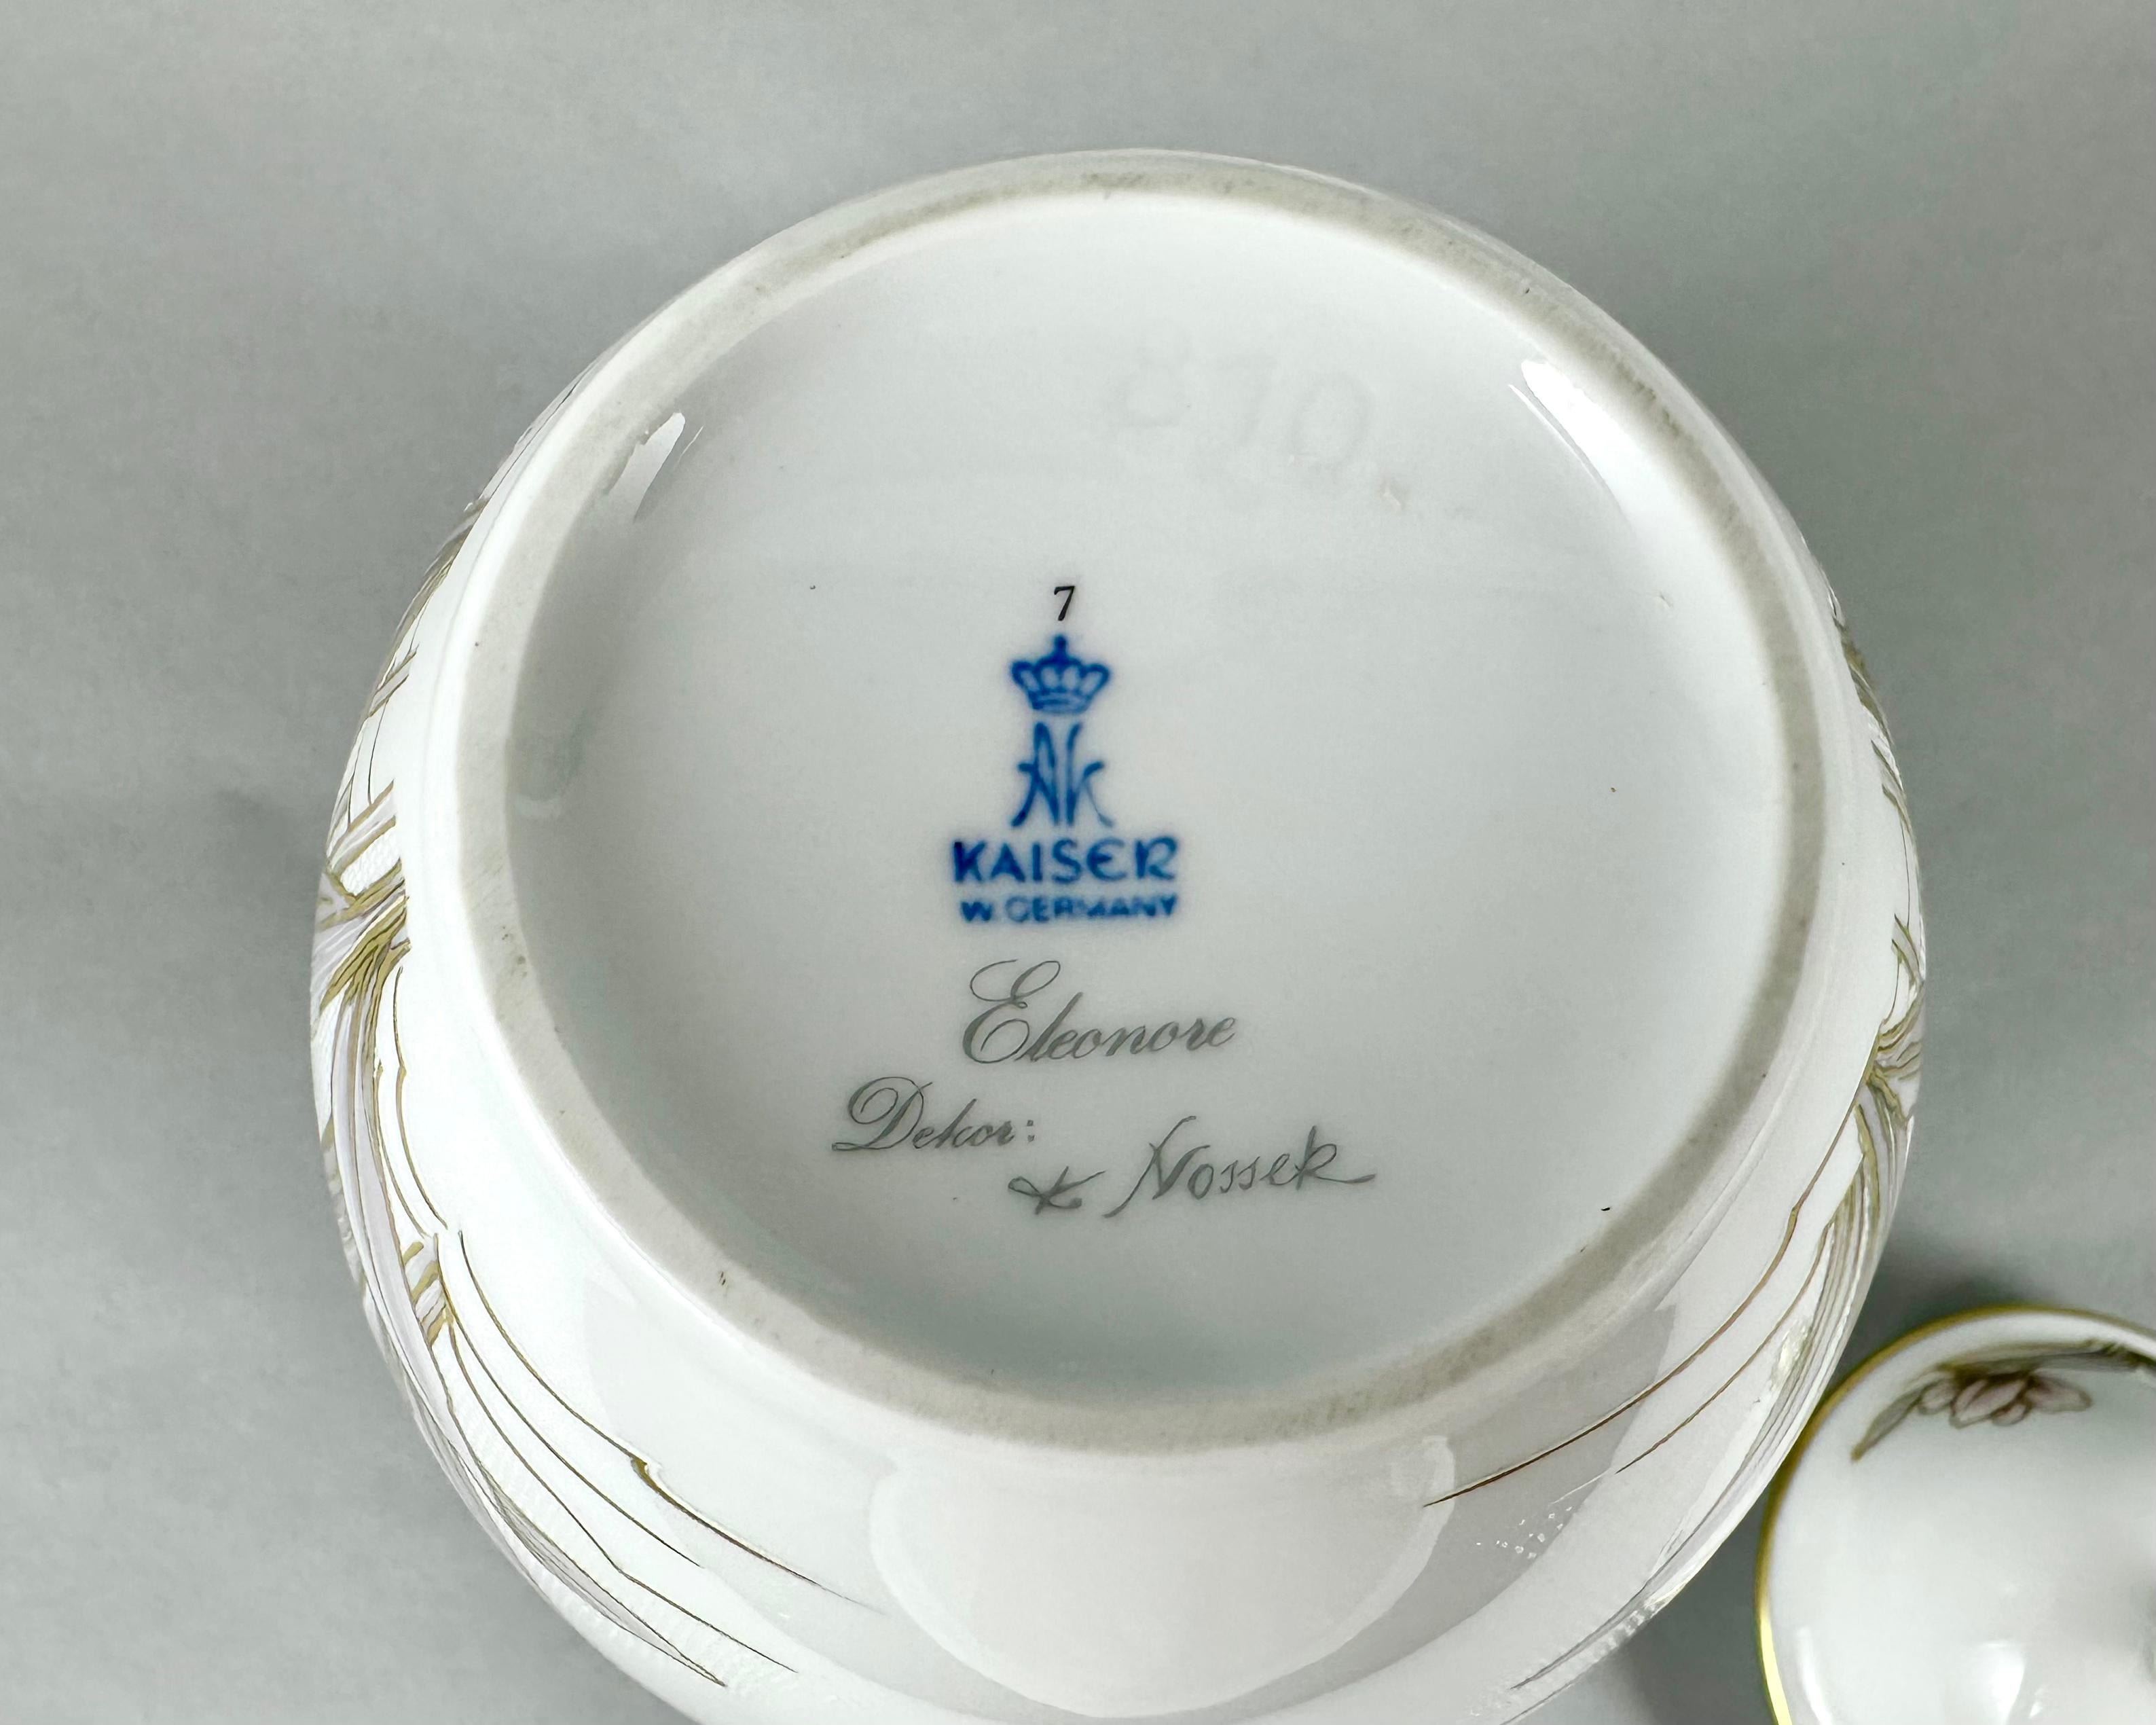 Vintage Vase /Urn With Lid by Kaiser Eleonore Series Design K.Nossek Germany  For Sale 1